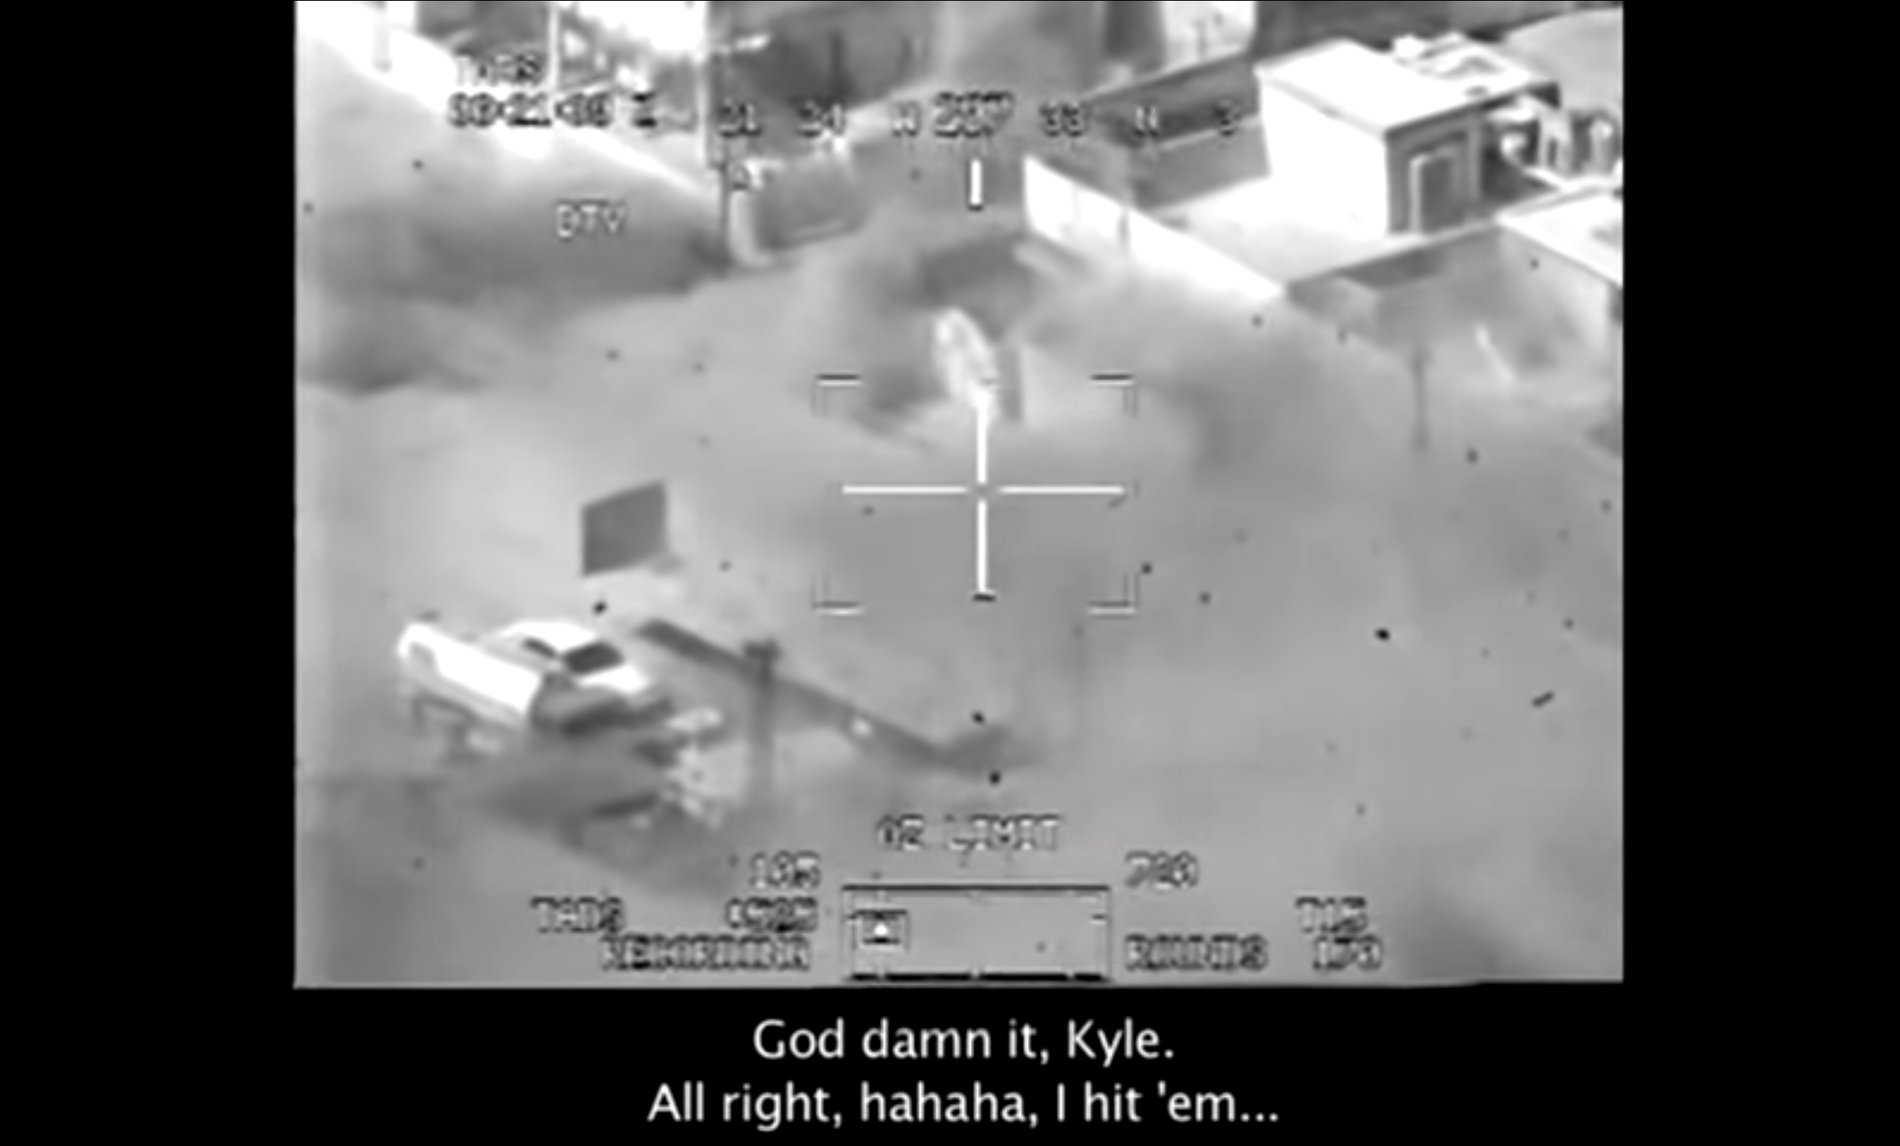 Bild ur videon där en amerikansk helikopterbesättning mejar ner civila irakier på öppen gata i Bagdad 2007.